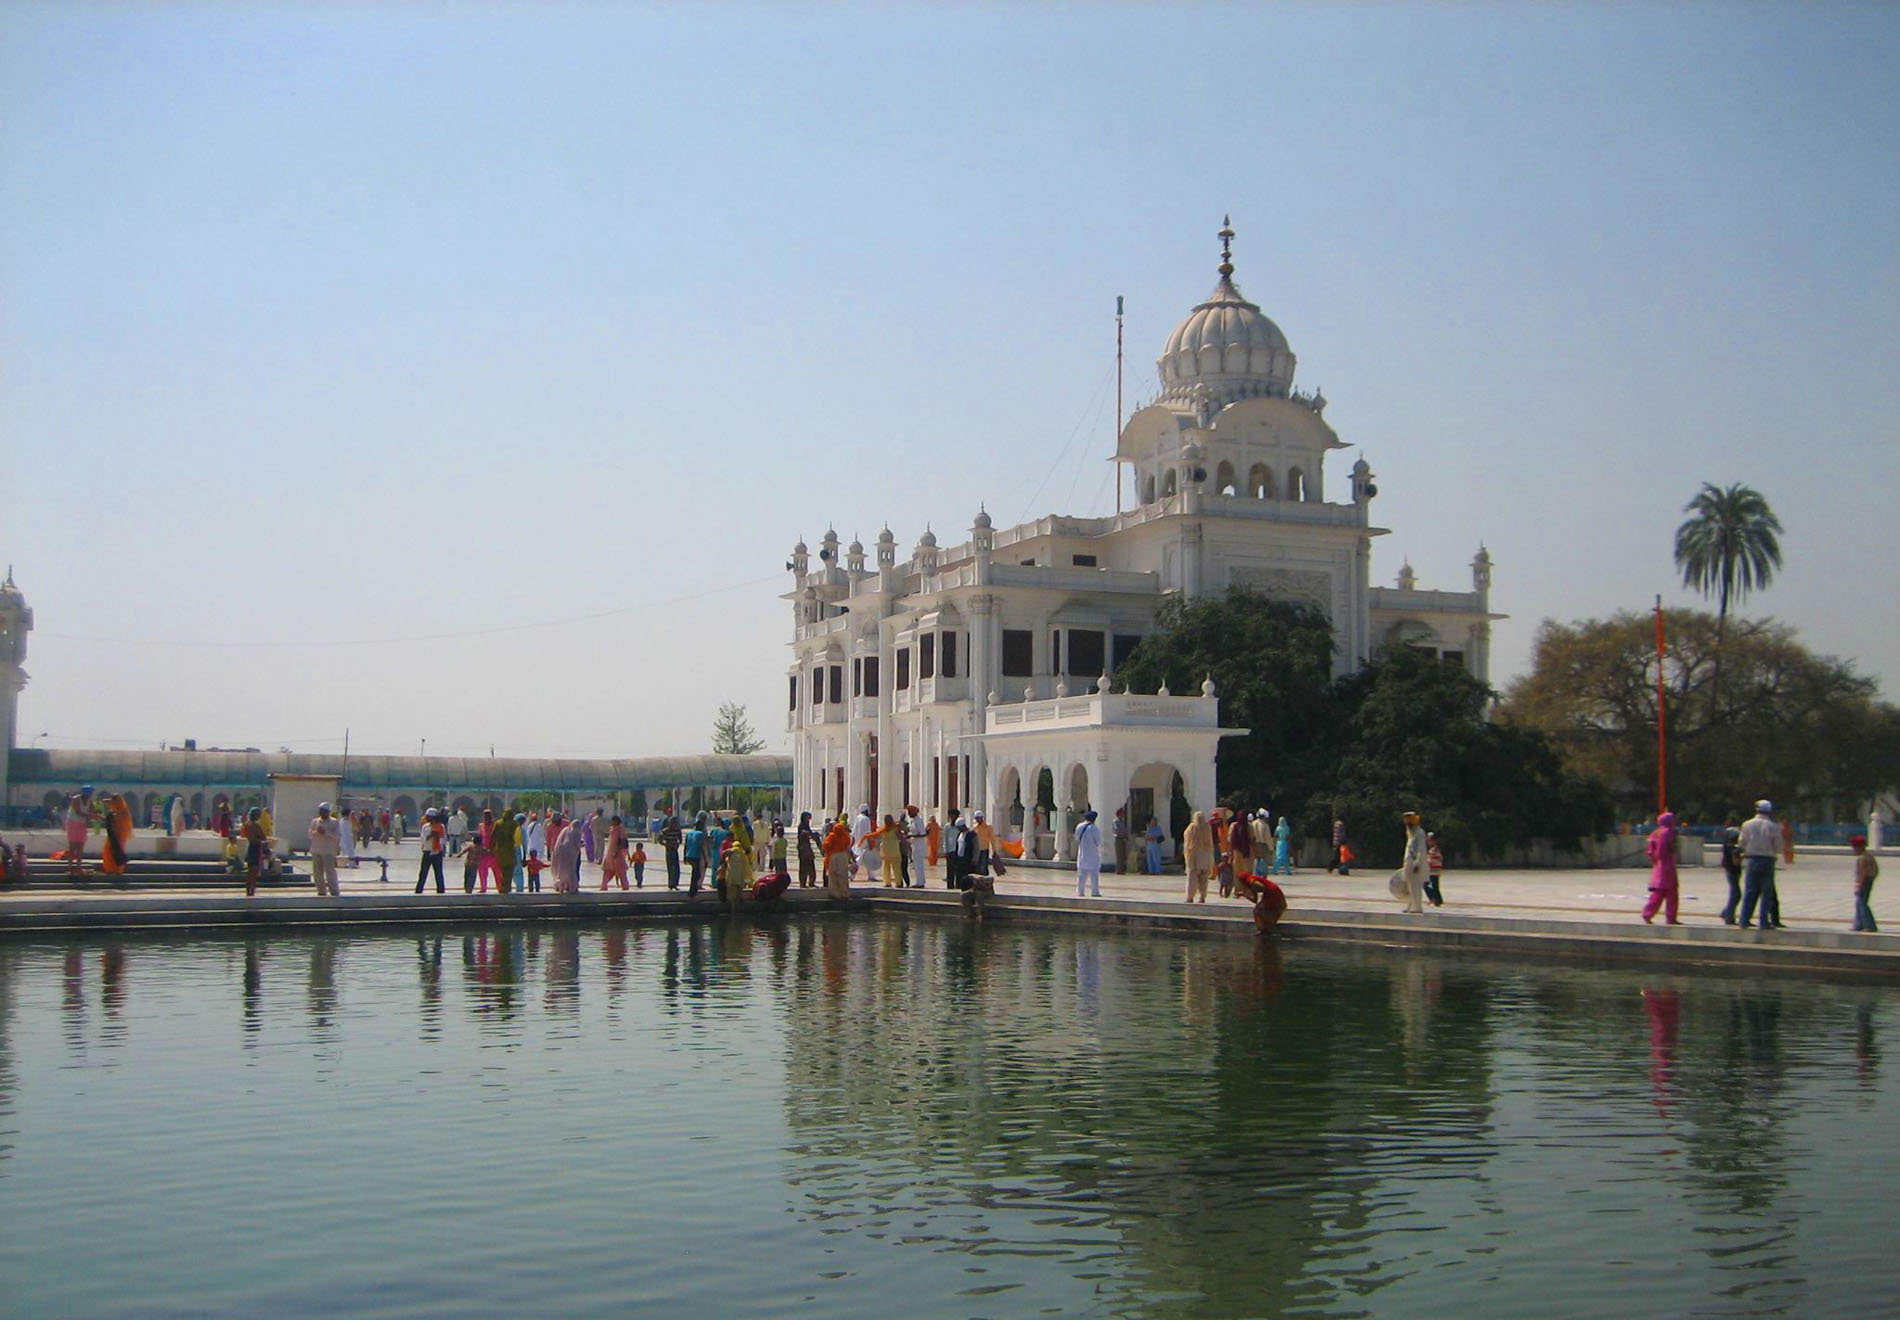 Gurudwara Sri Ber Sahib, Sultanpur Lodhi